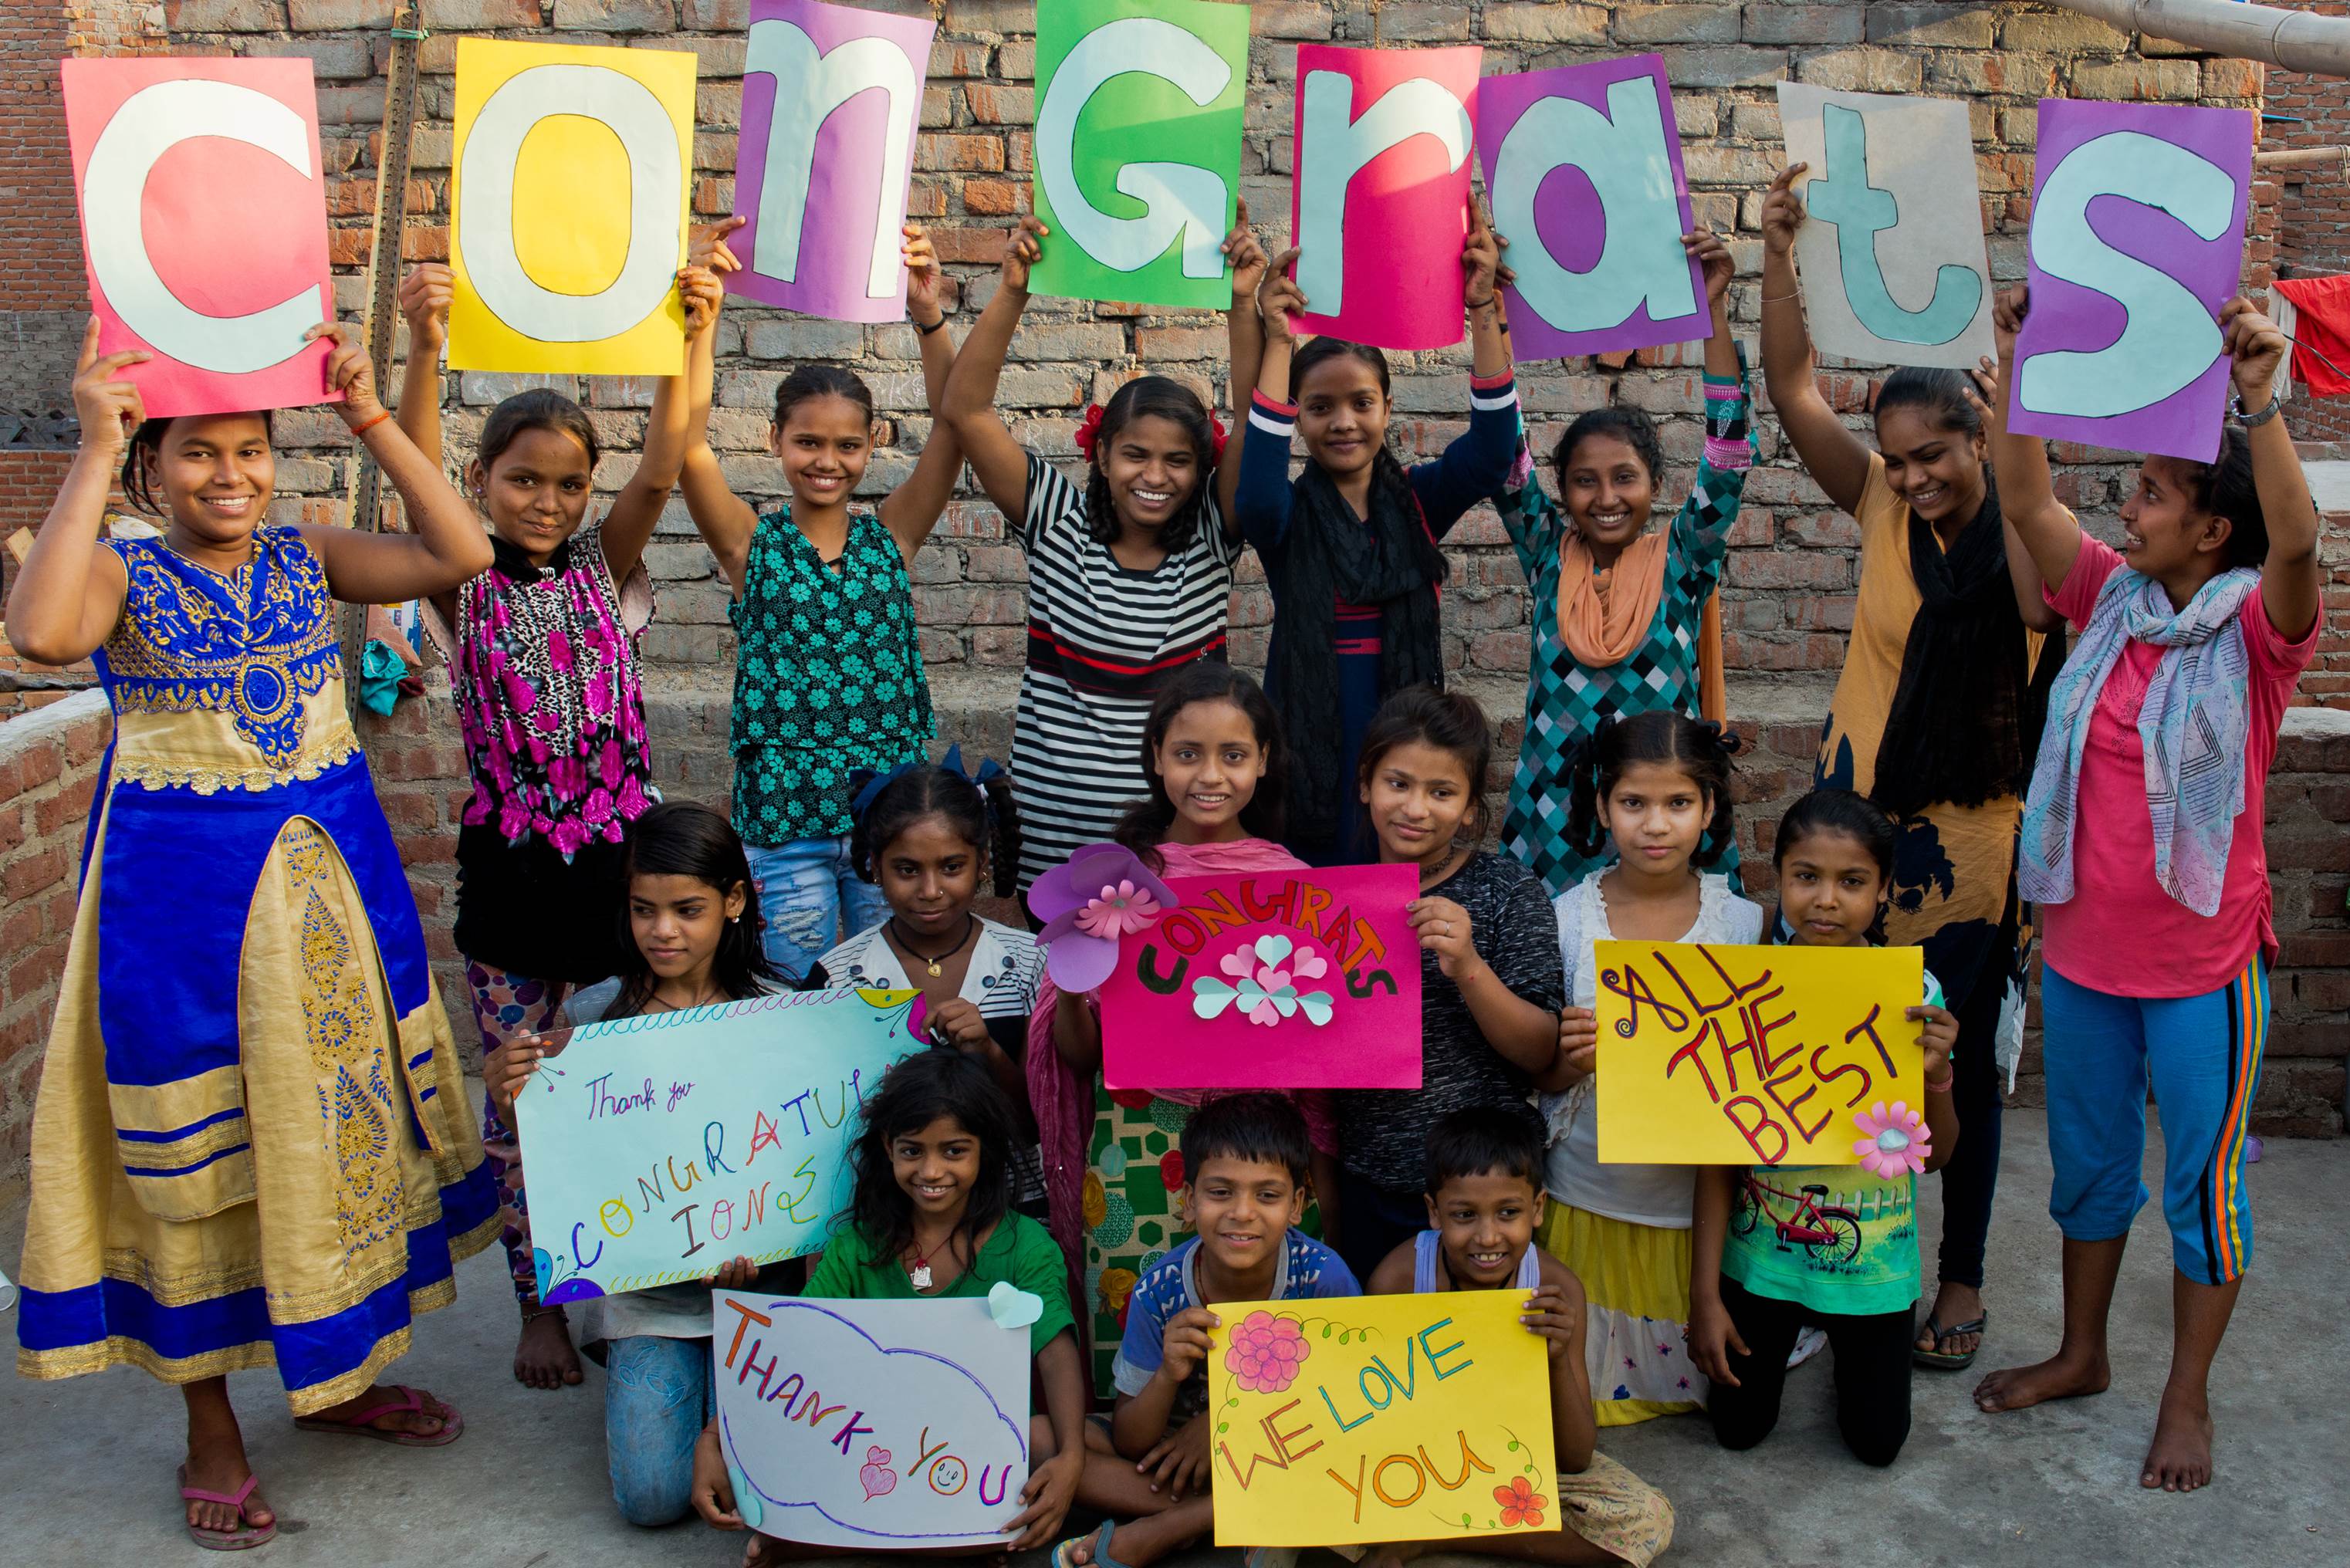 Grupo de niños en la India formar la palabra "felicidades" con carteles en ingles y enseñan otros carteles de felicitación